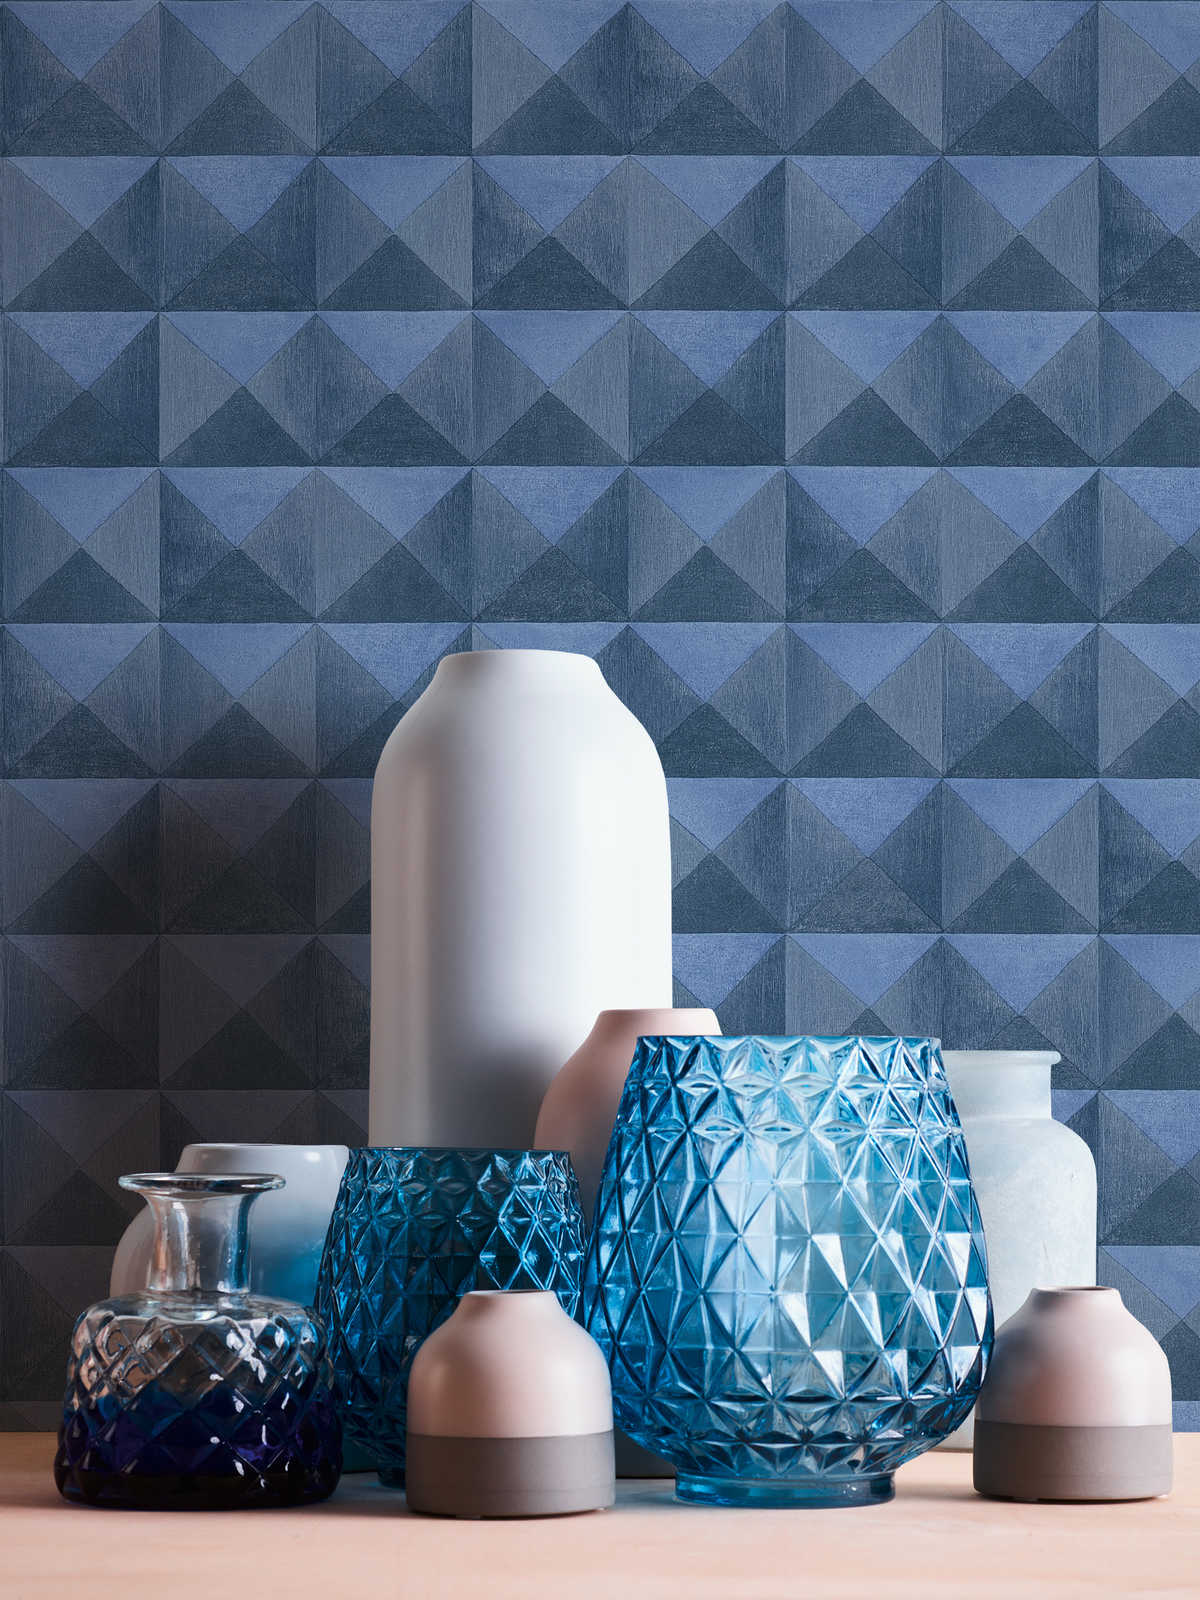             Vliestapete mit 3D Muster im Pyramiden Effekt – Blau
        